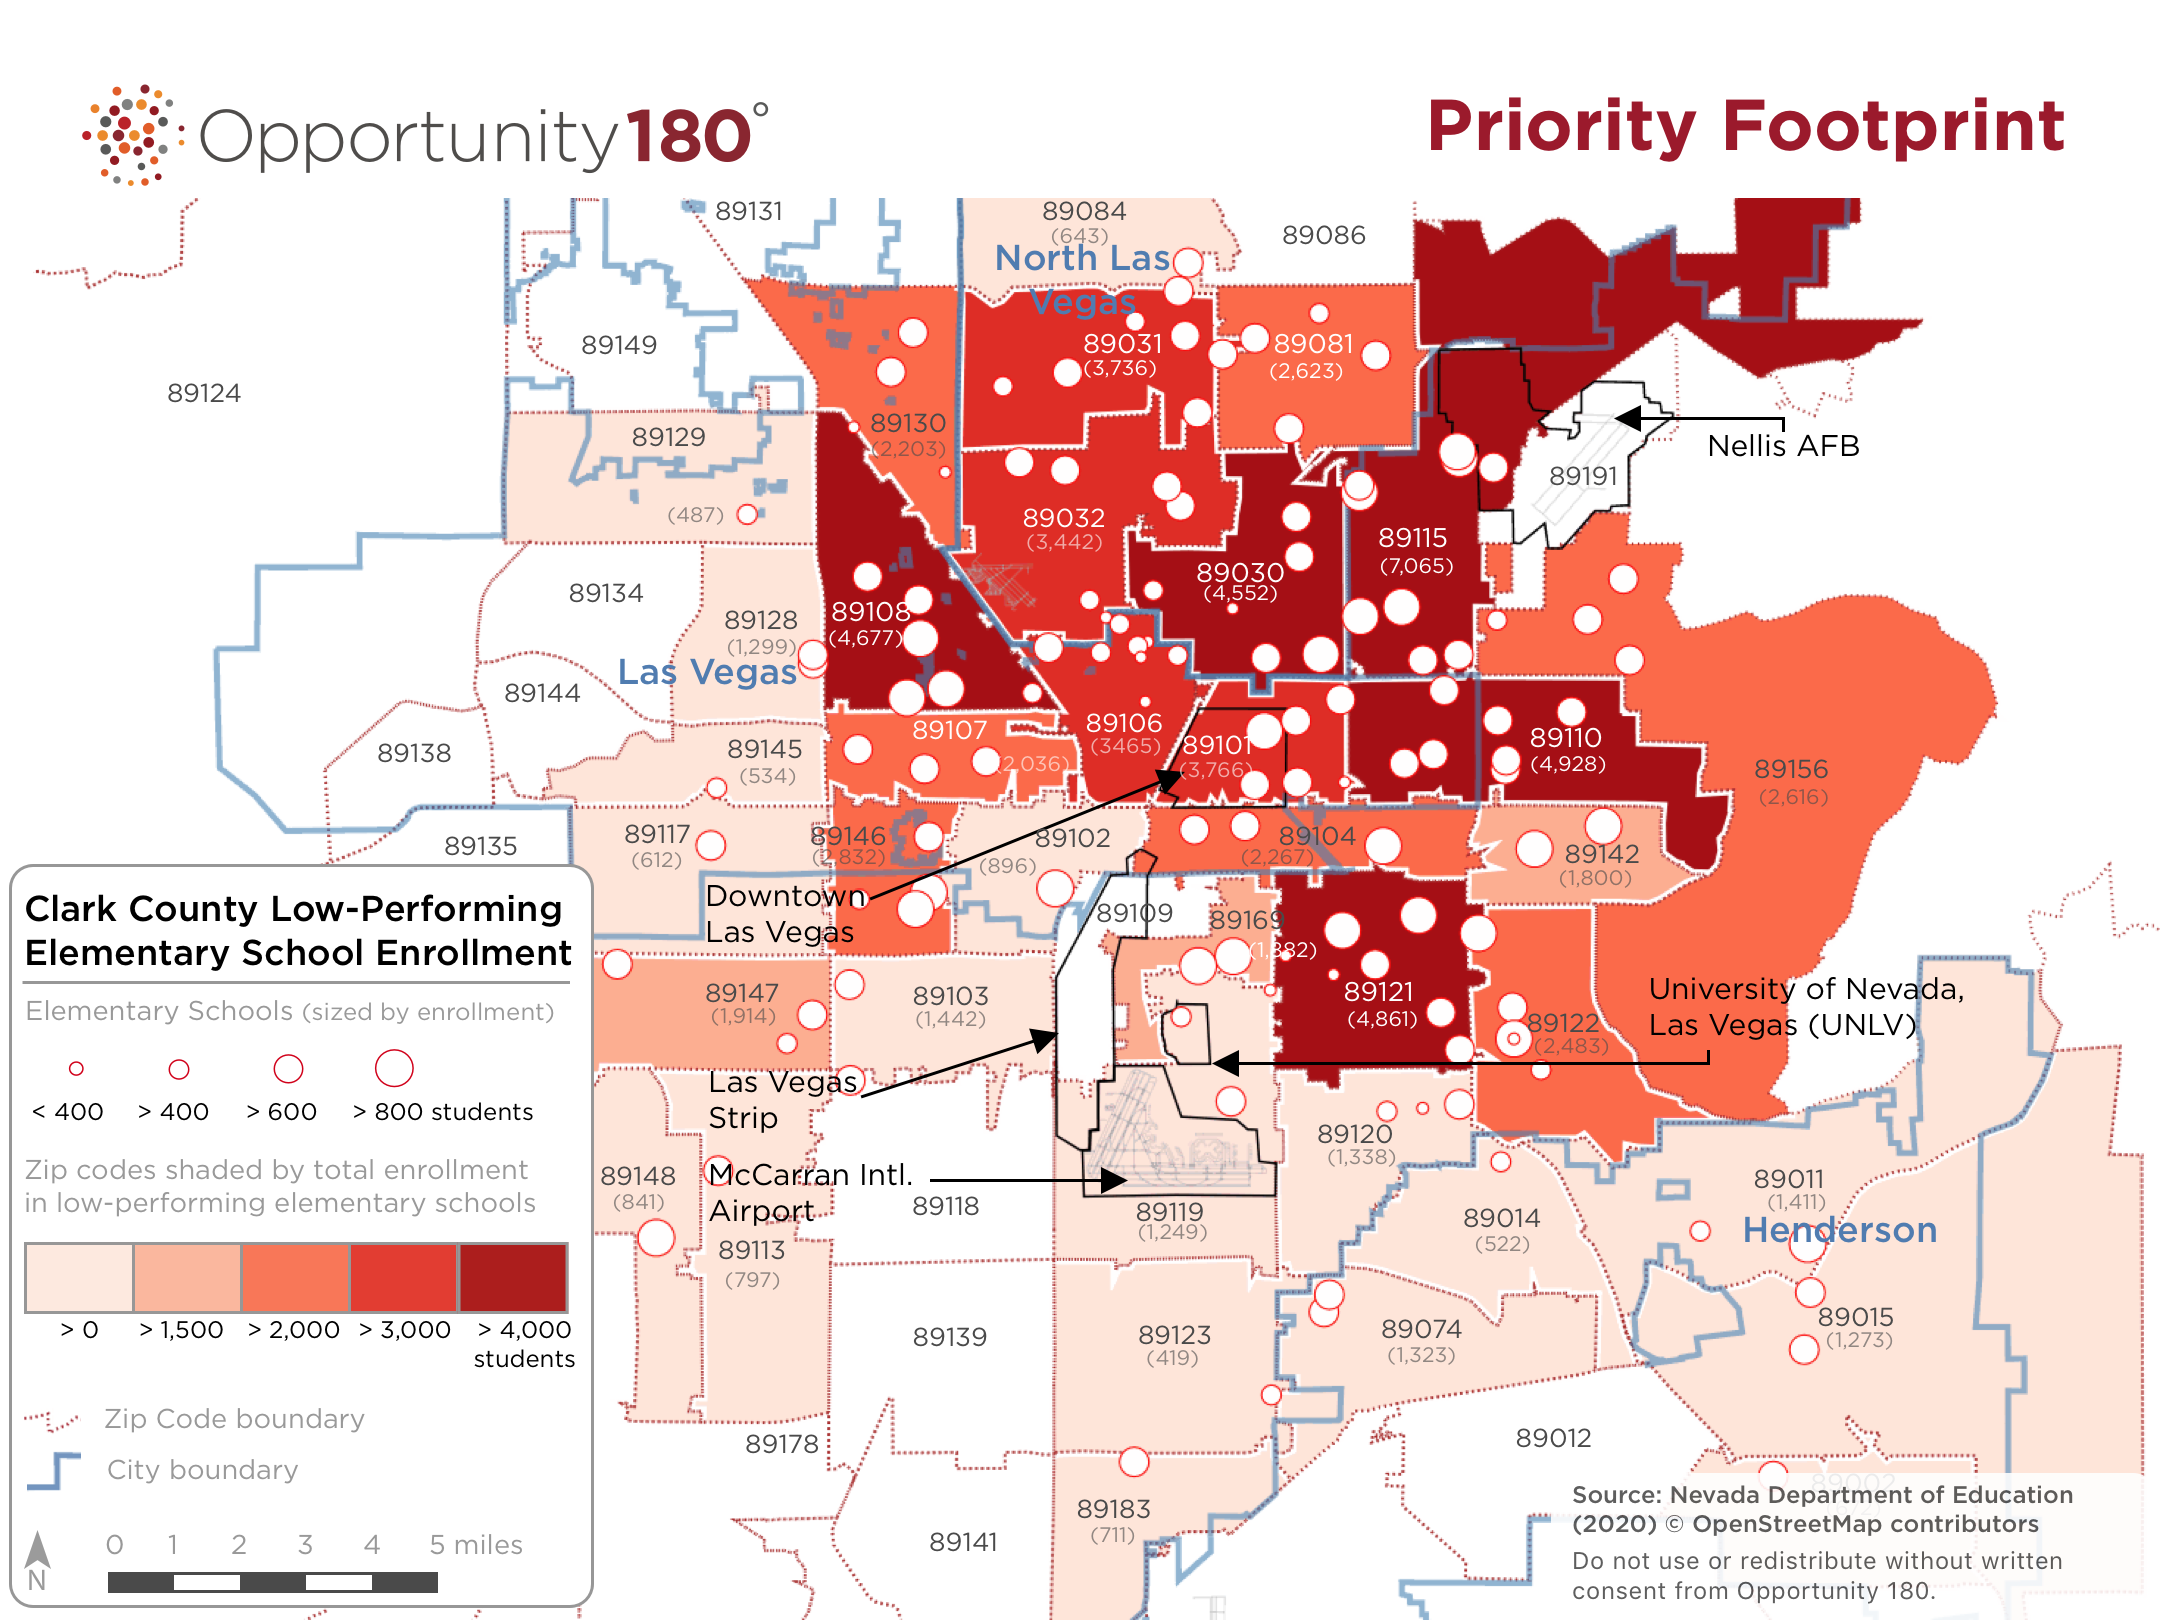 2020 Priority Footprint Heat Map